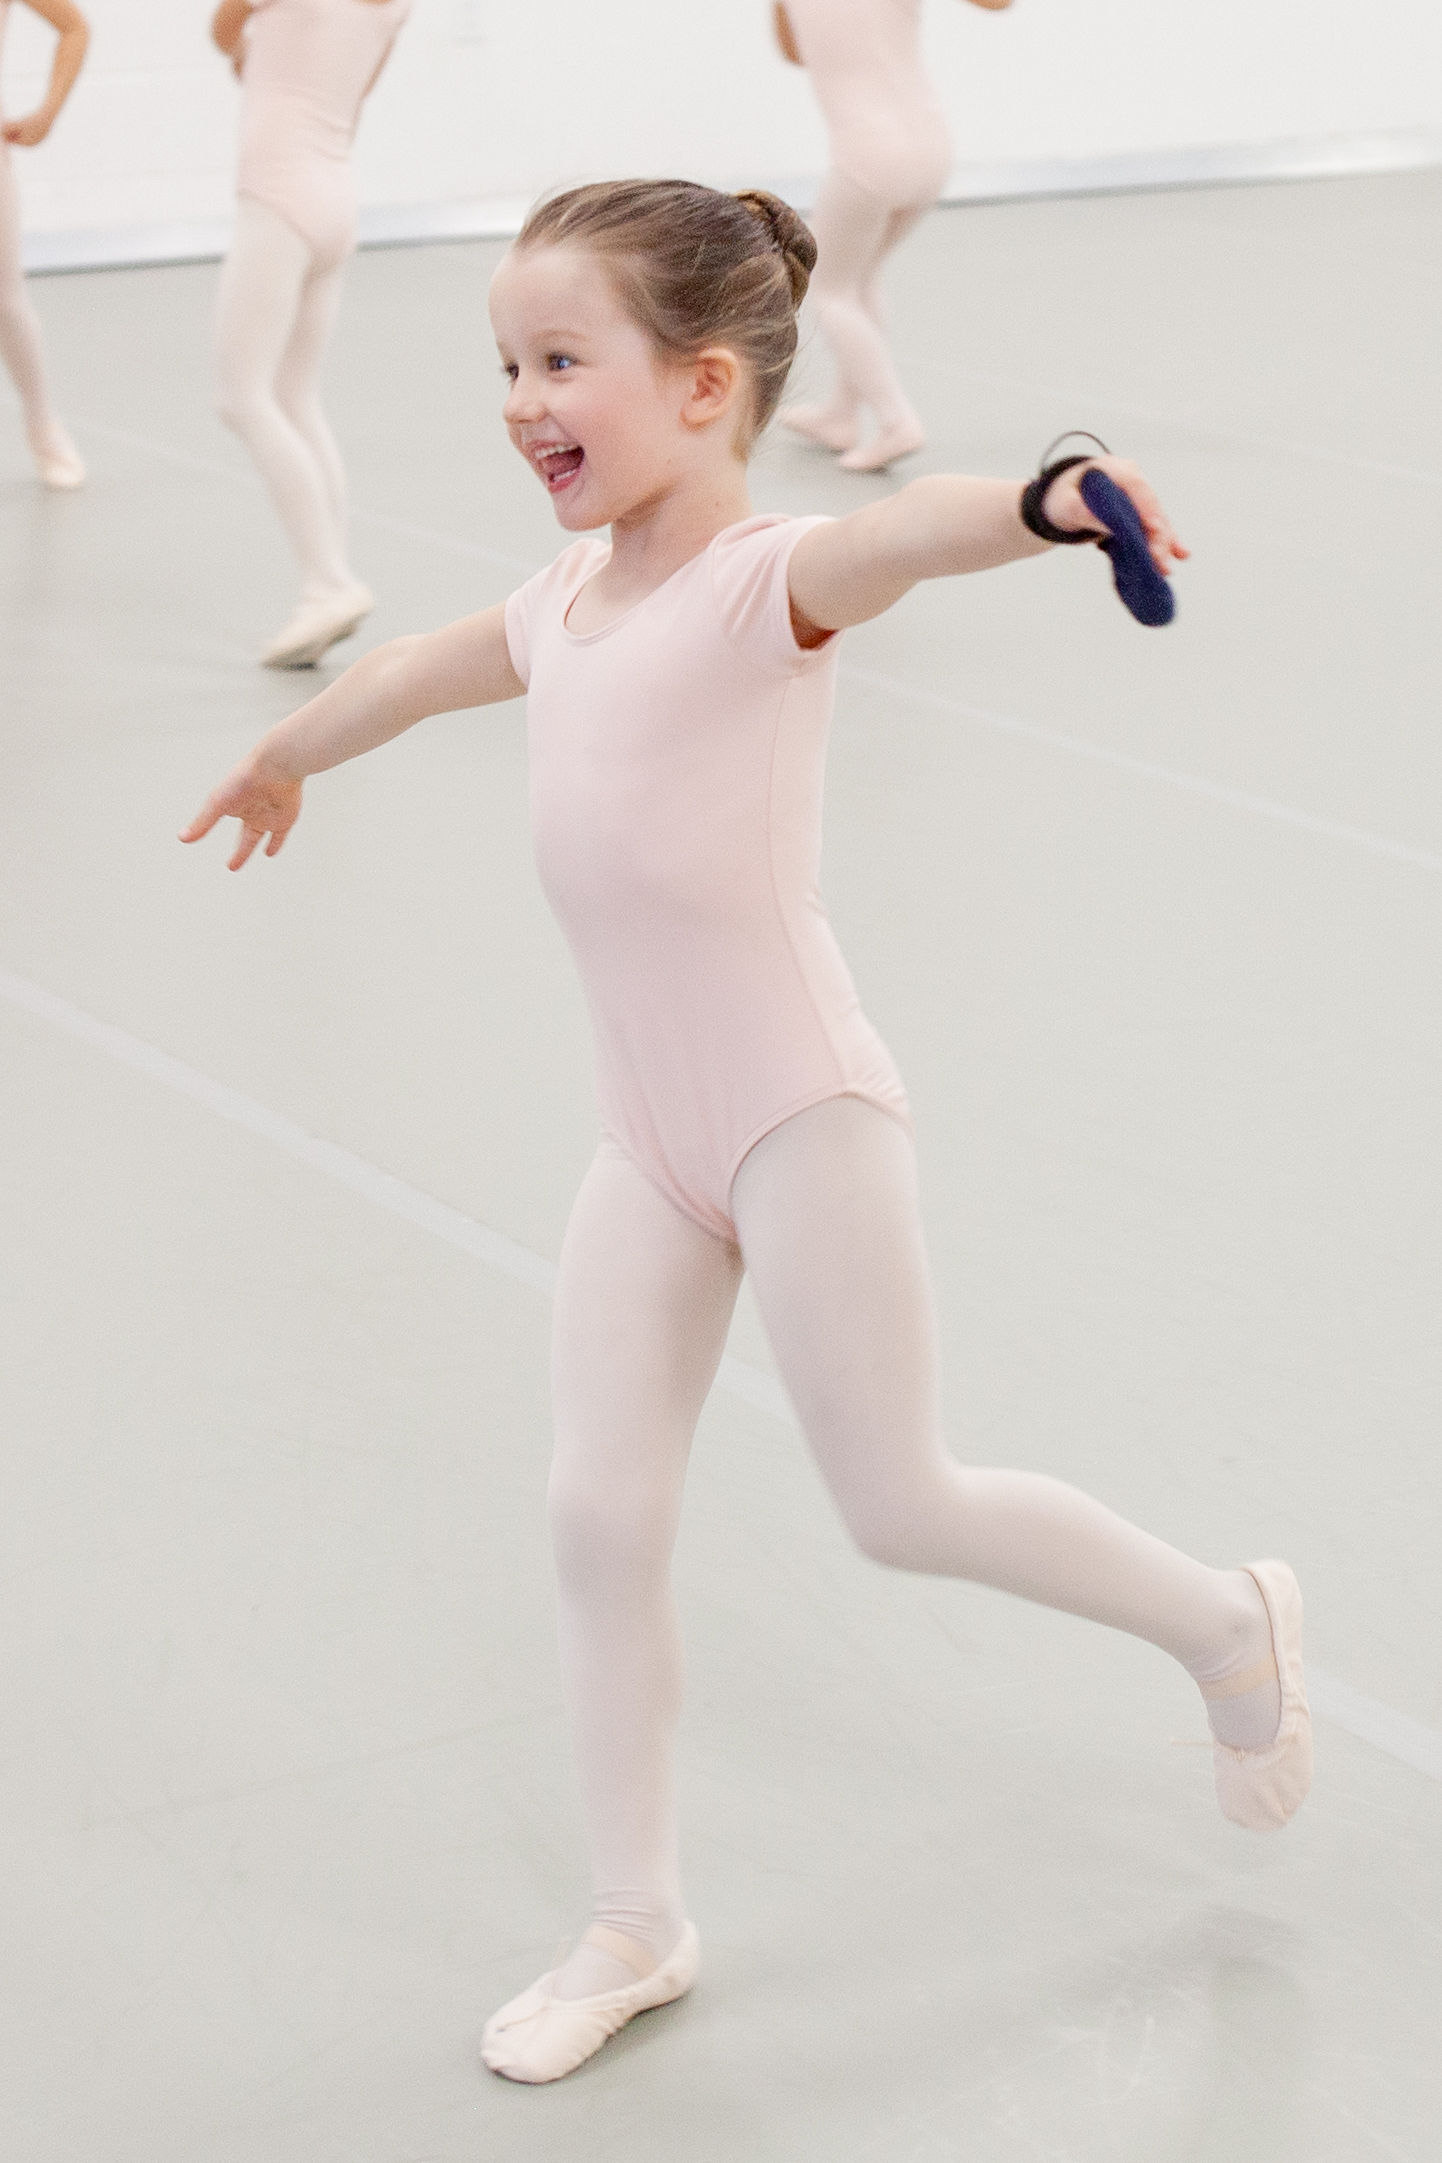 beginning ballet dancer in class practicing leaps across studio